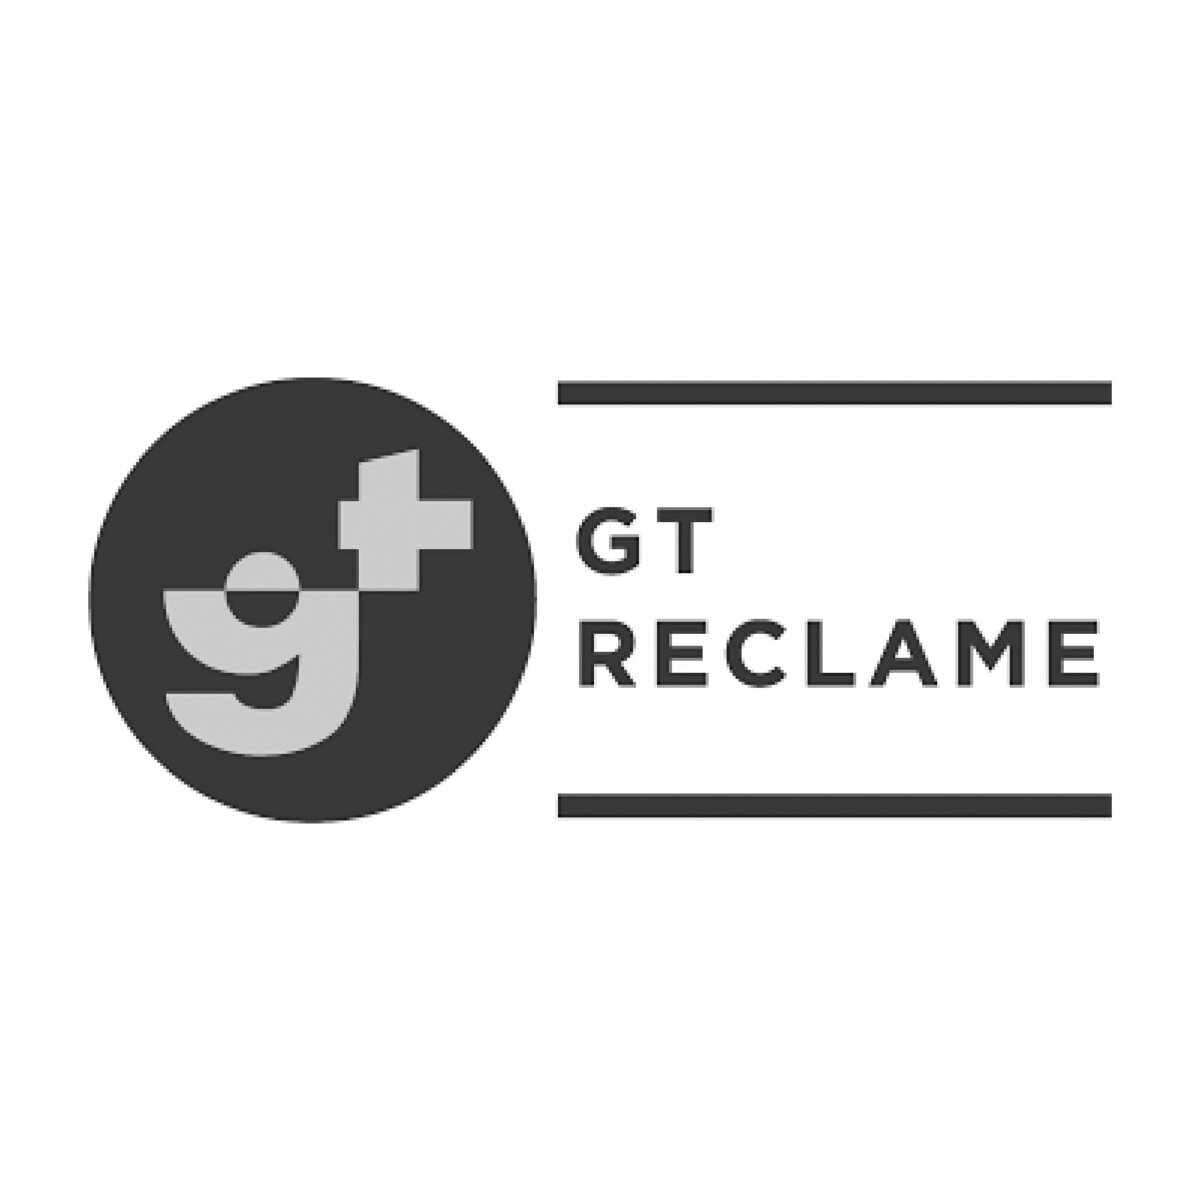 GT Reclame B&W